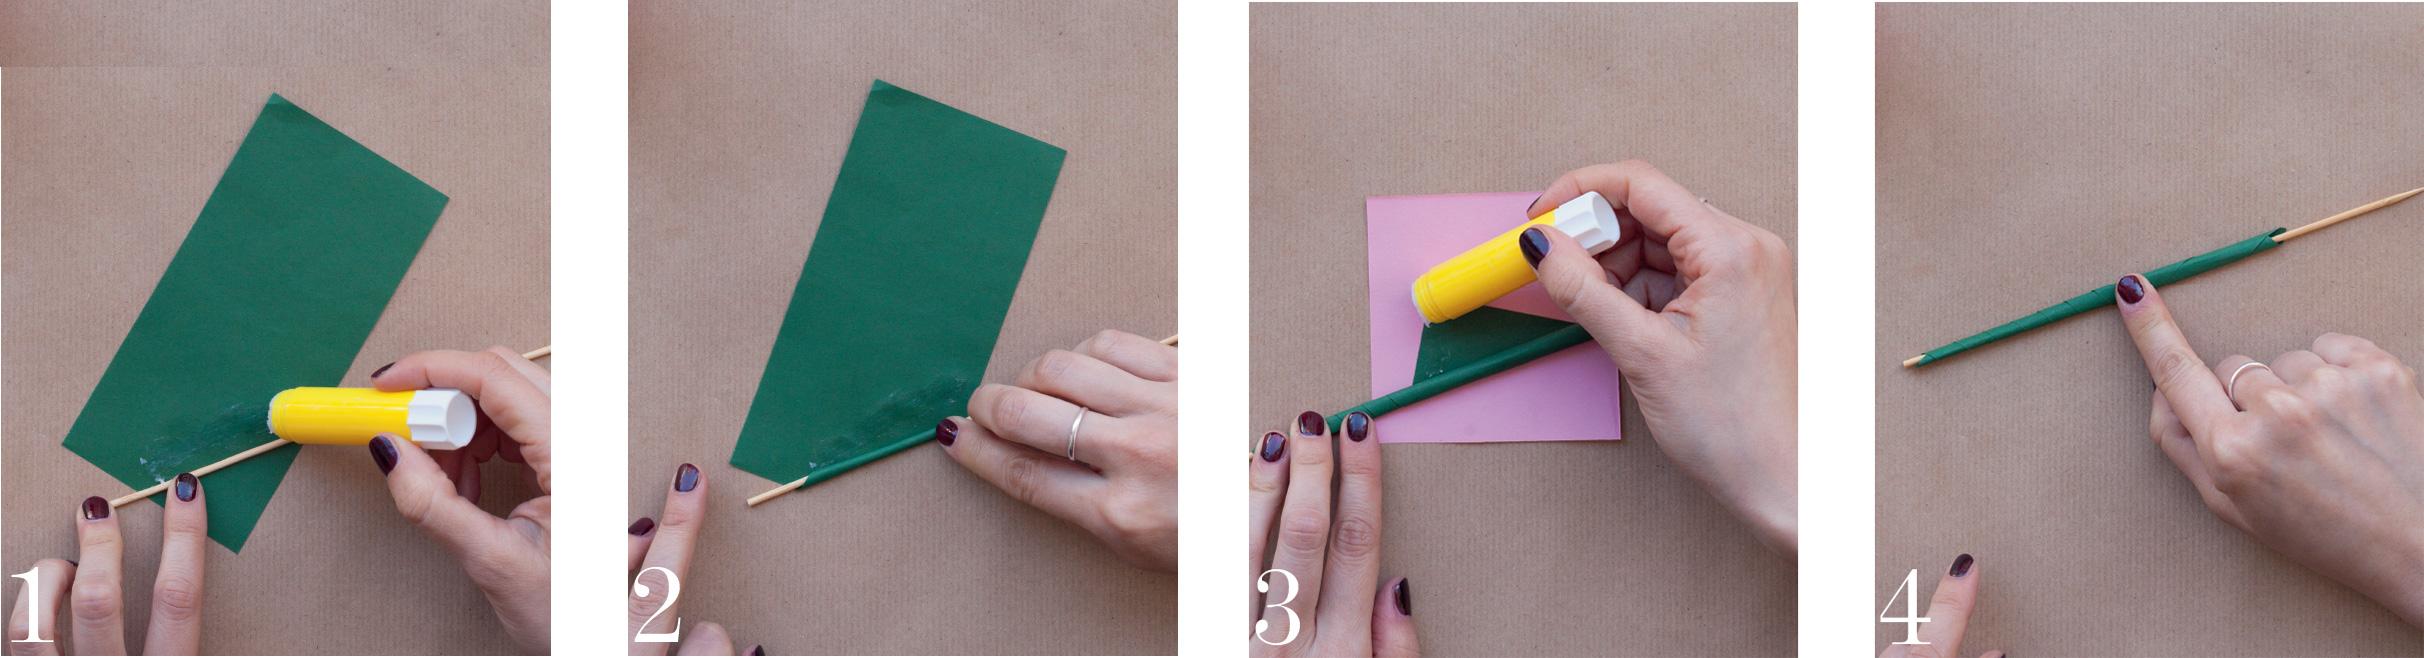 FGX Origami Carta Artigianale per Bambini Bambini E Adulti 200 Fogli 15 * 15CM 40 Colori Vivaci su Un Lato Carta Origami per Progetti Artistici E Mestieri in Carta Riciclata Multicolore